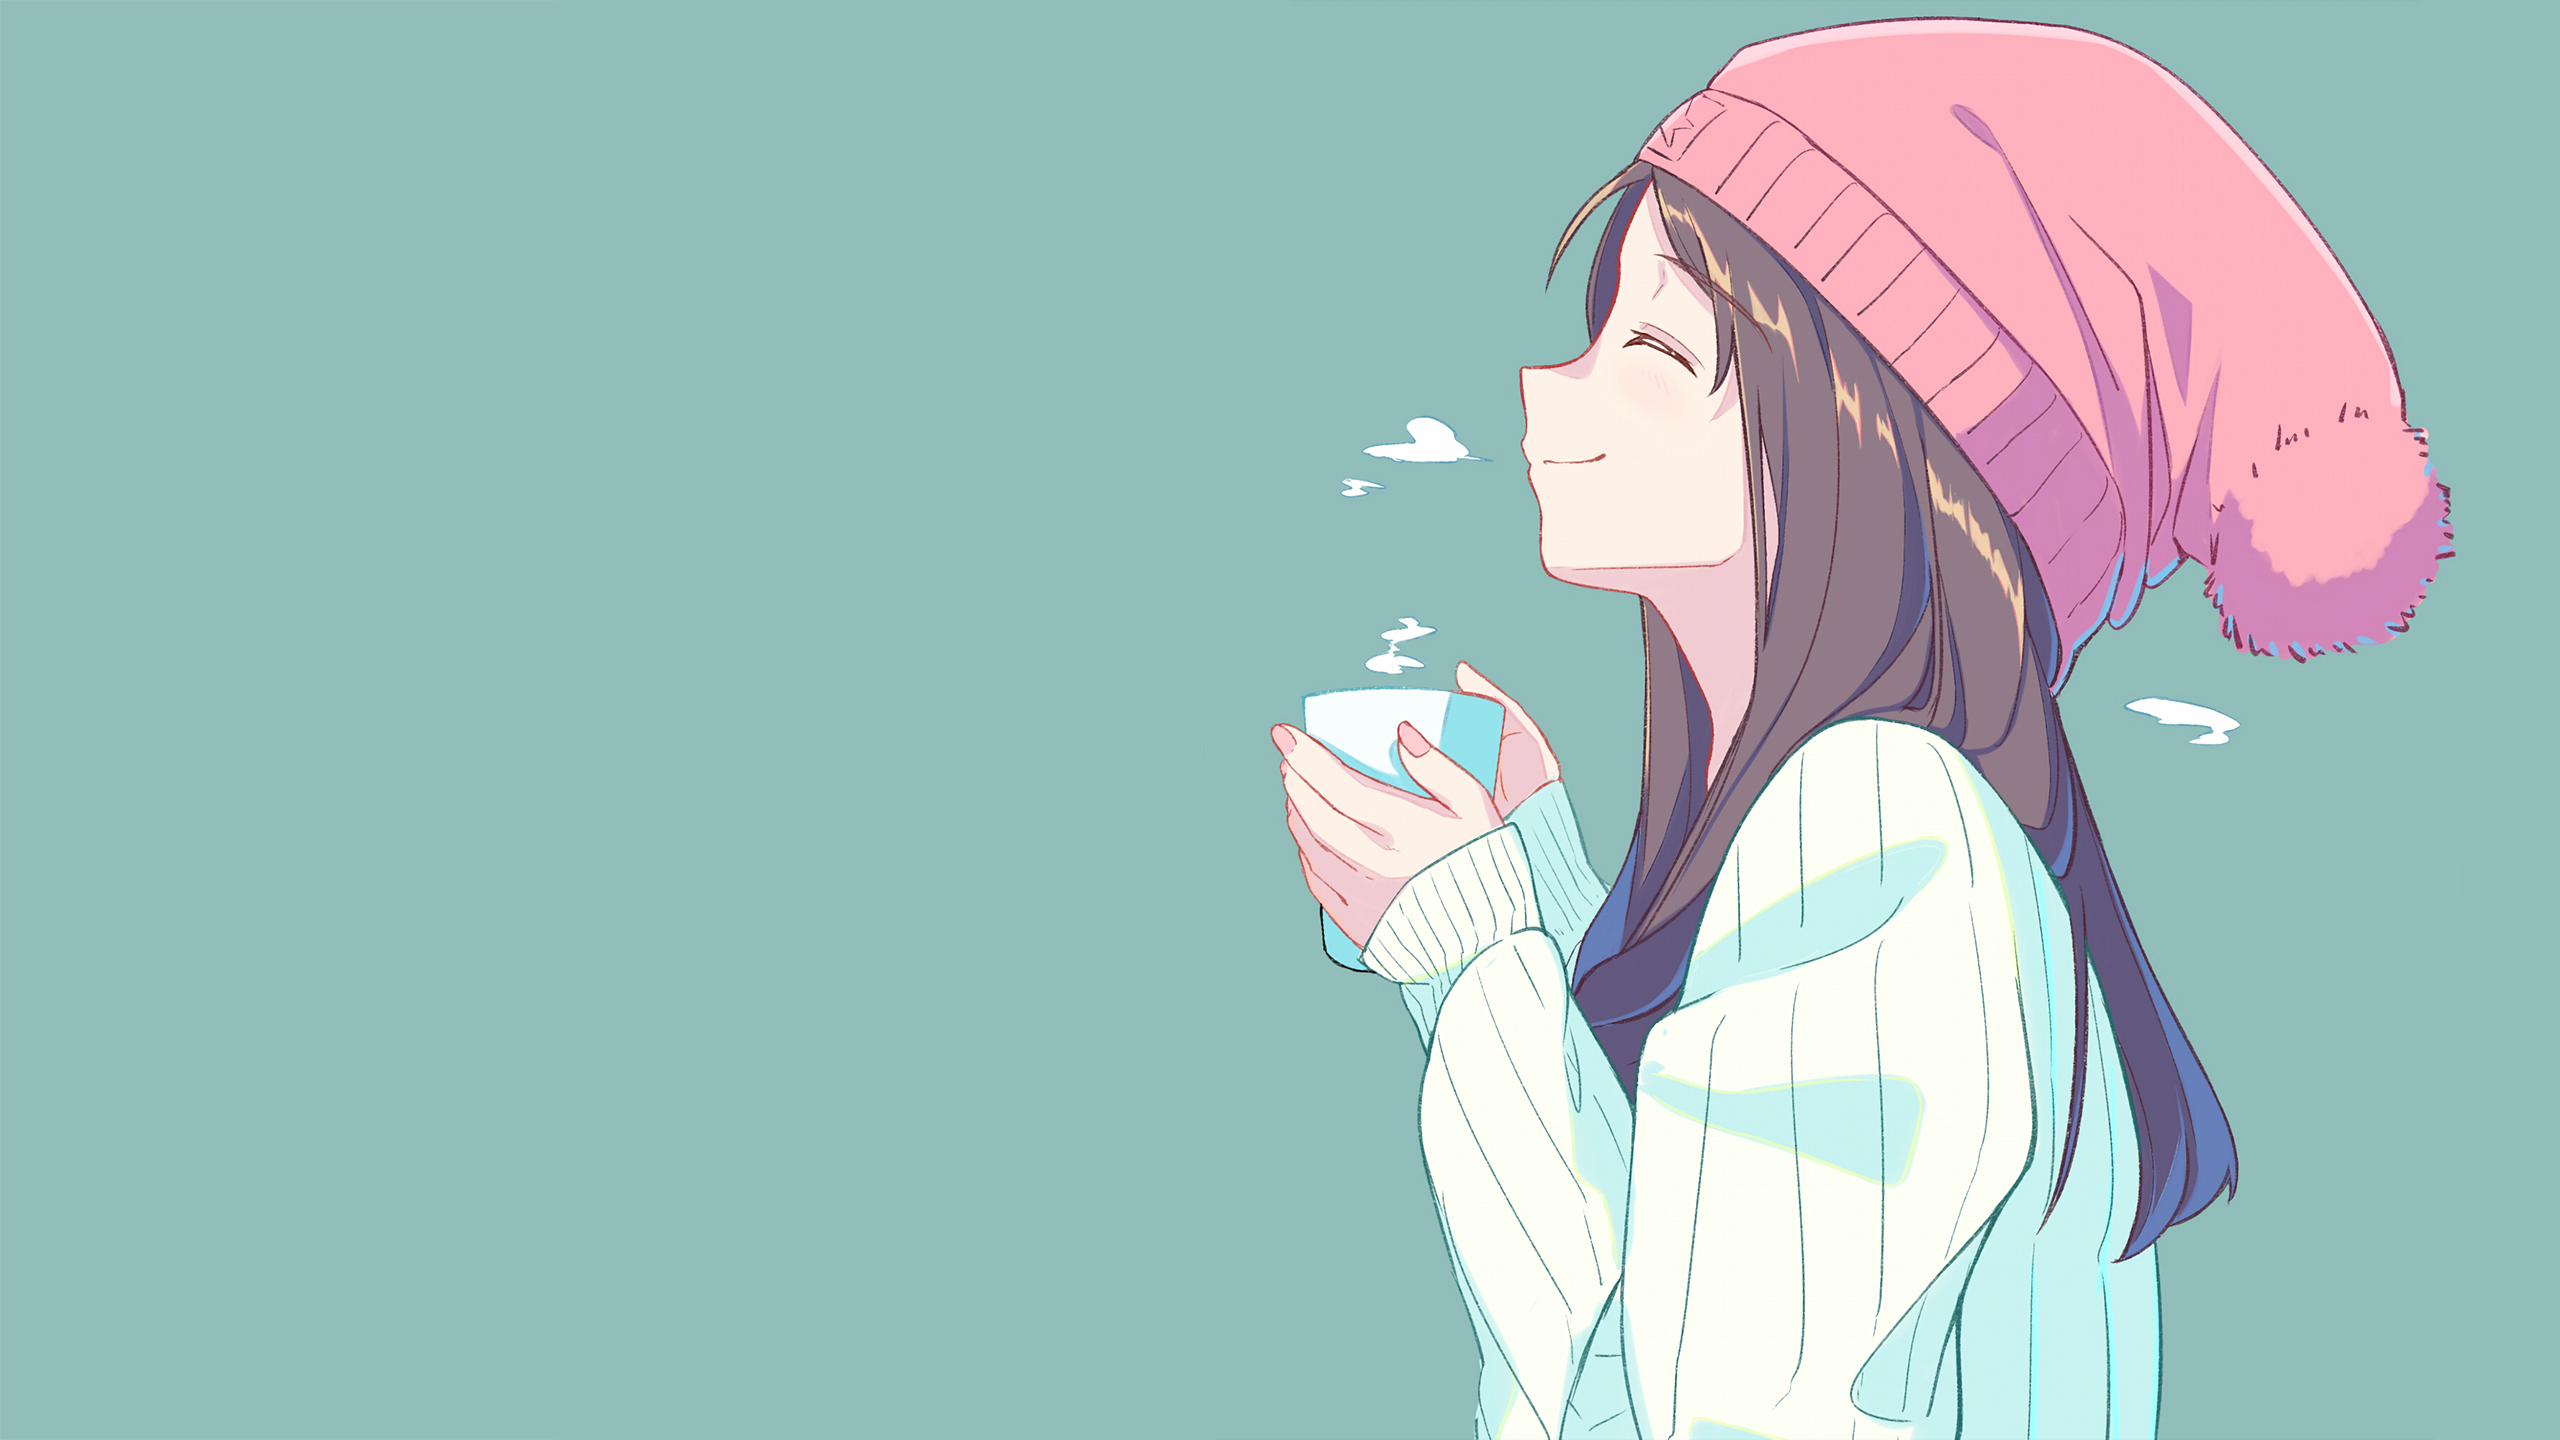 Tea girl [Original](2560x1440)